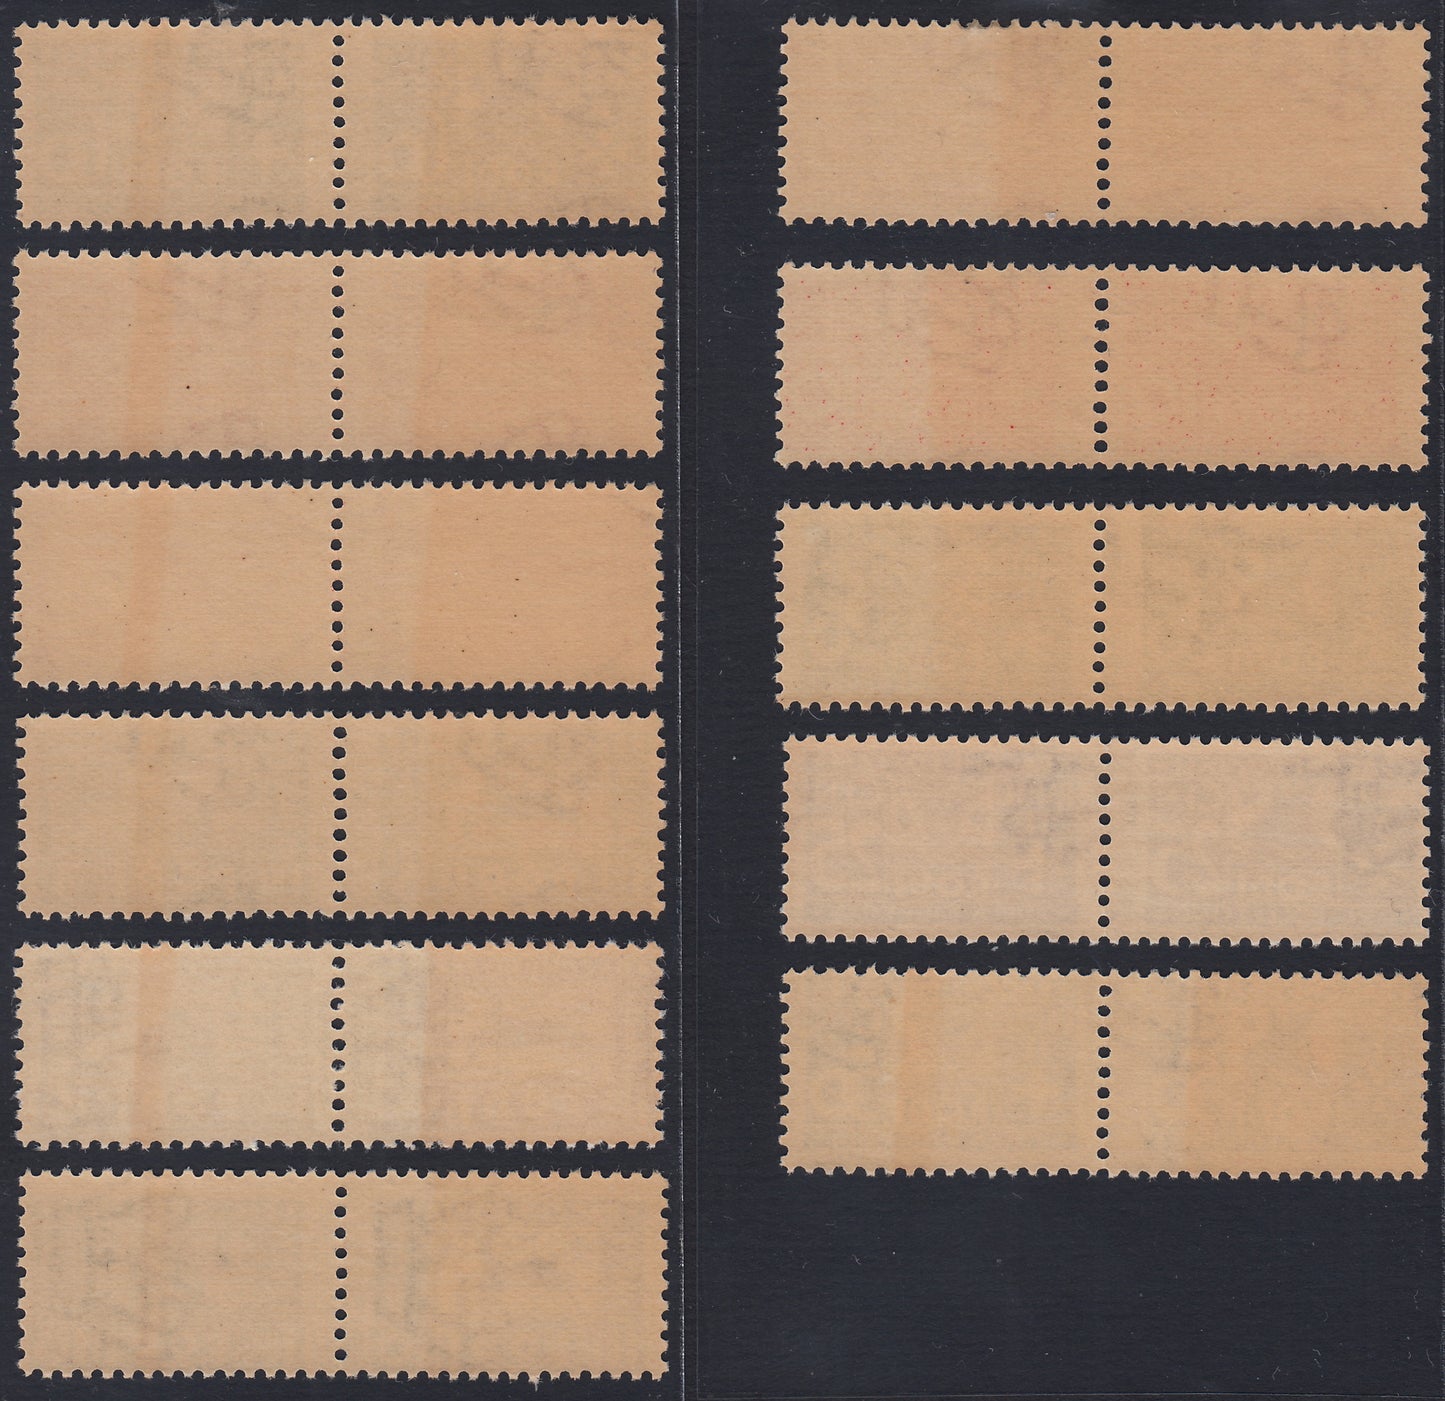 Egeo26 - 1934 - pacchi postali soggetti vari, serie degli 11 valori nuova con gomma integra (1/11)